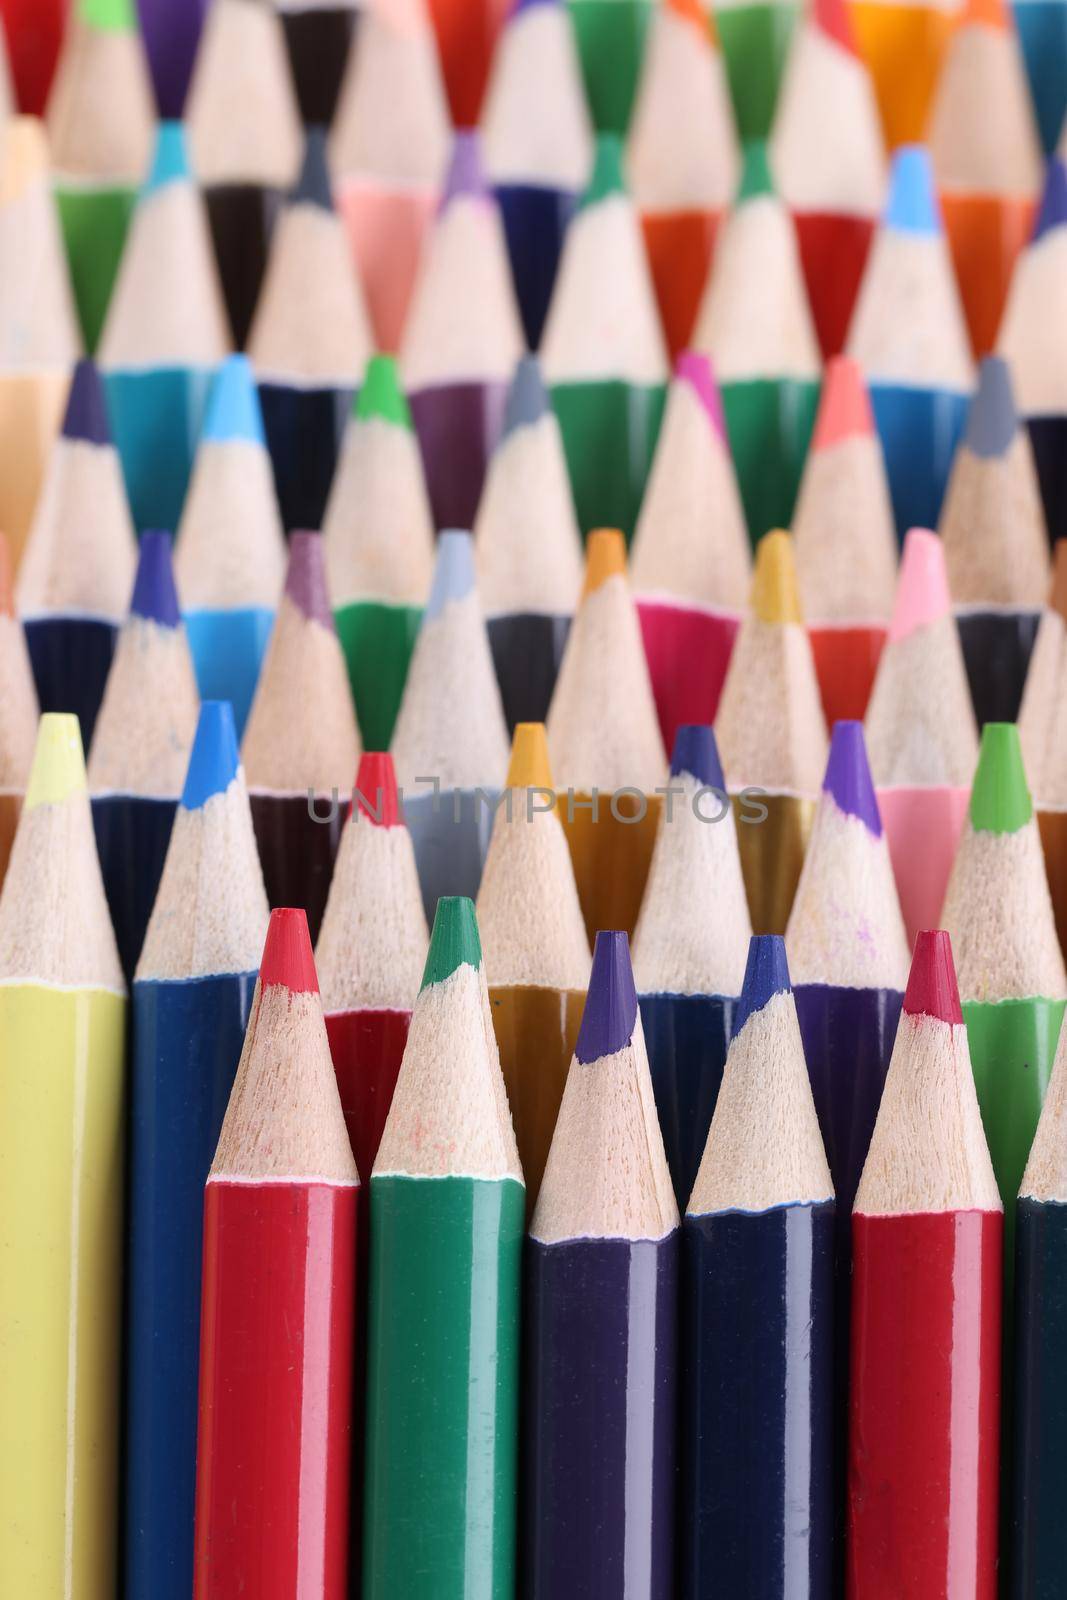 Closeup of assortment of colored pencils. Assortment stack of colored wood drawing pencils closeup